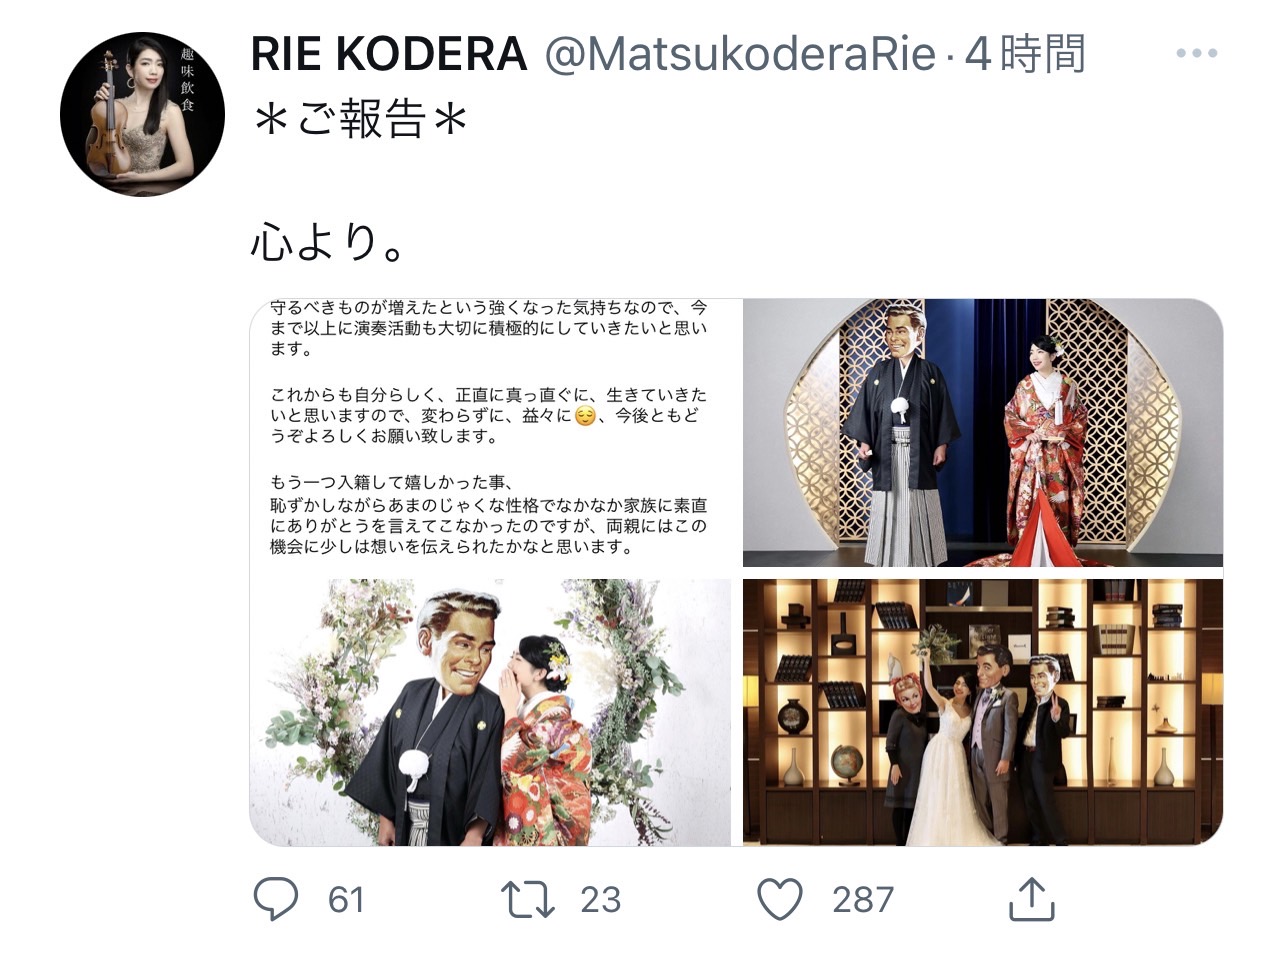 小寺里枝さんが入籍したことを報告したTwitter投稿のキャプチャ画像